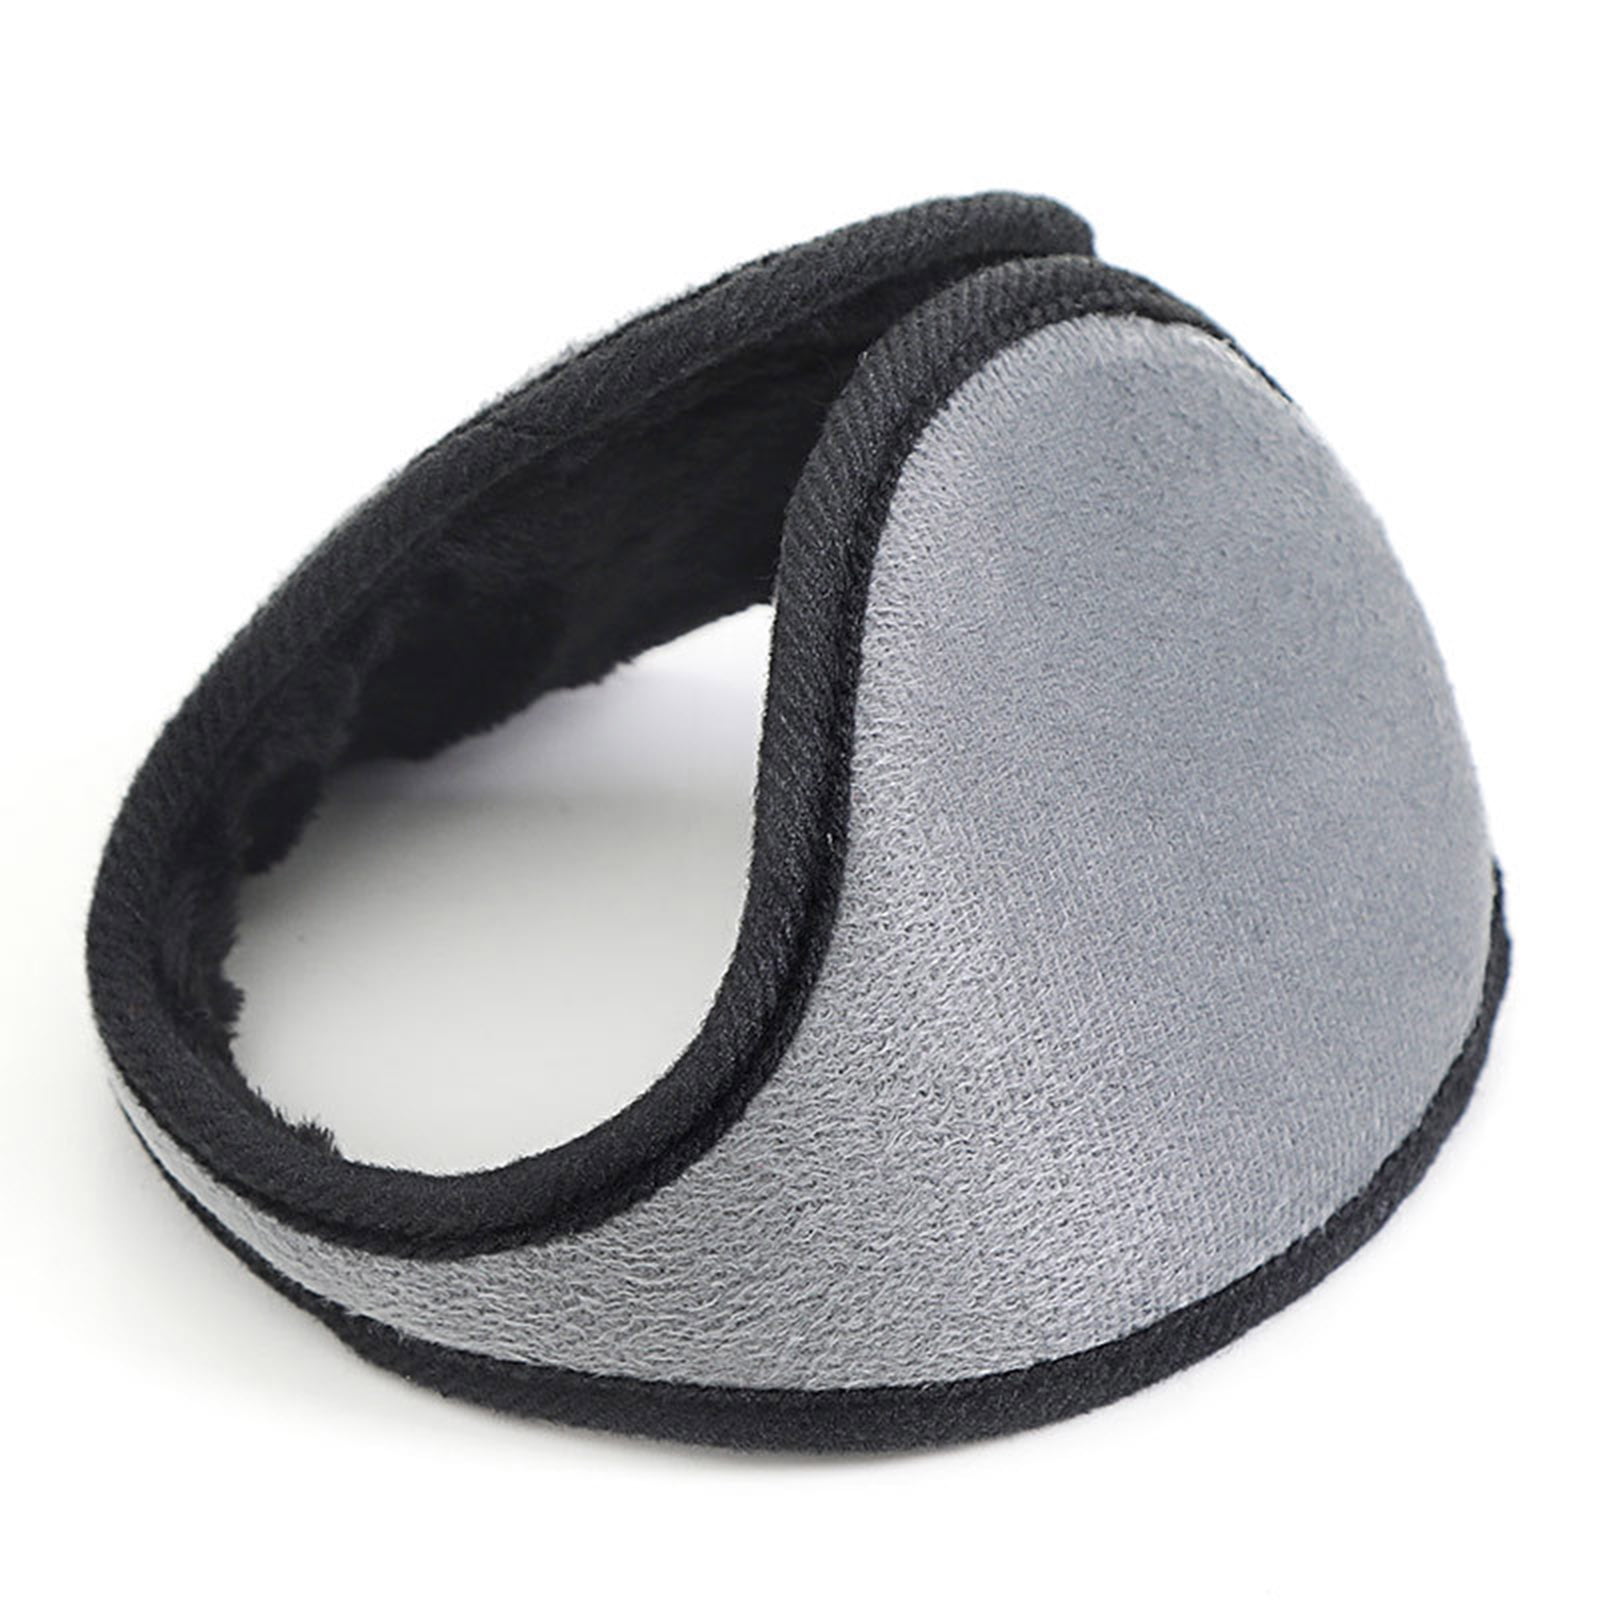 Earmuffs for Women Classic Foldable Ear Muffs Winter Accessory Outdoor Ear Warmer 